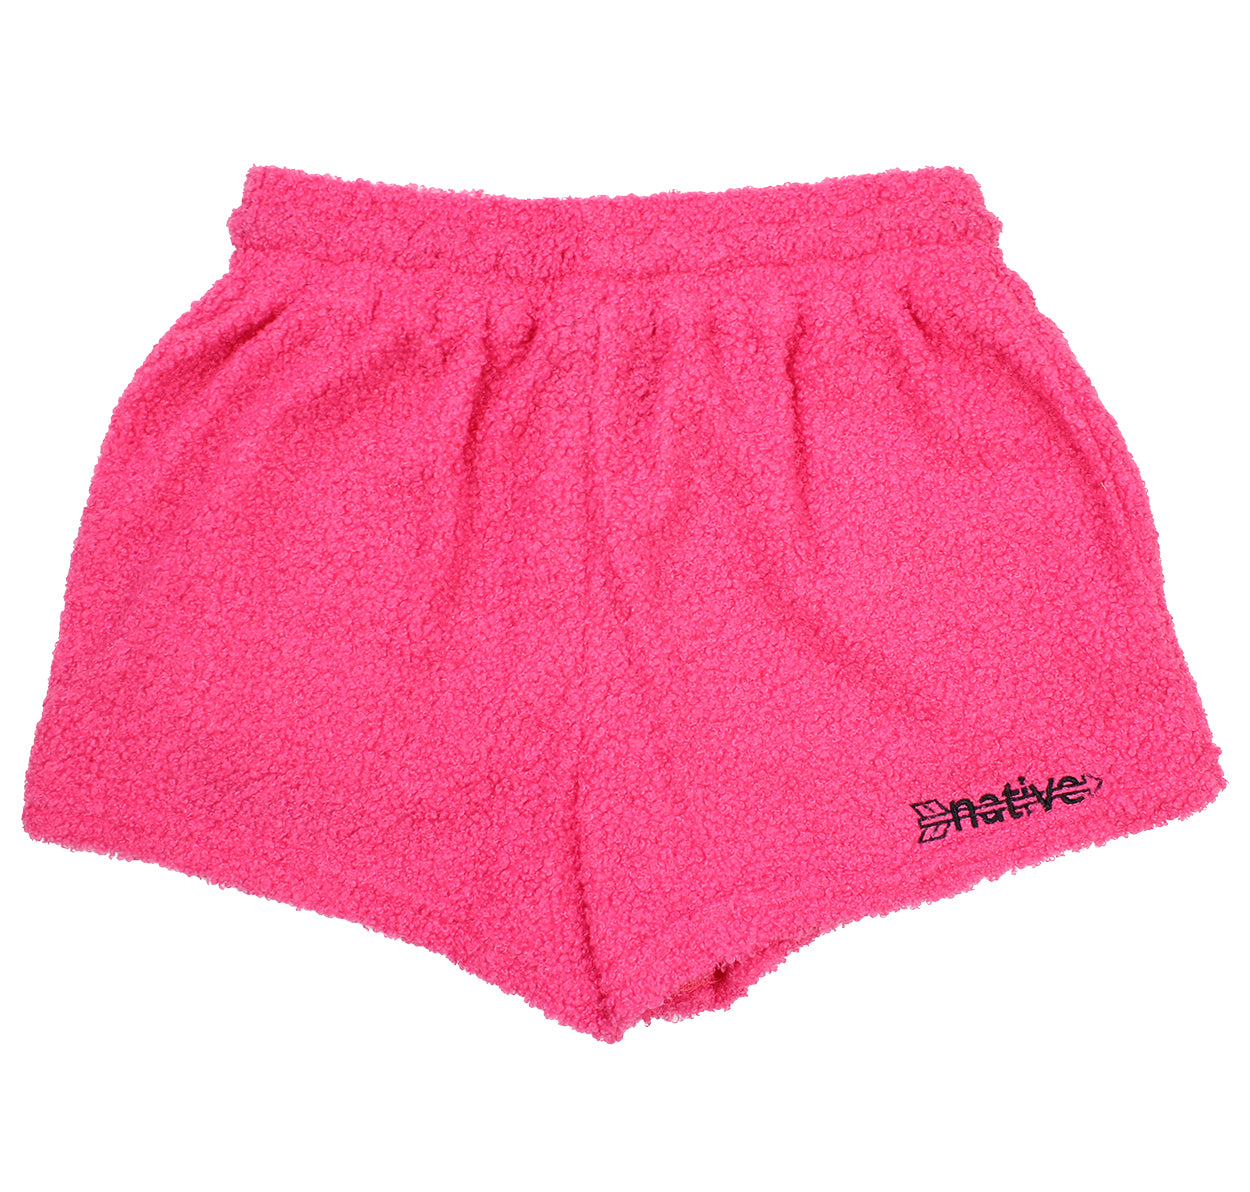 sherpa shorties in hot pink